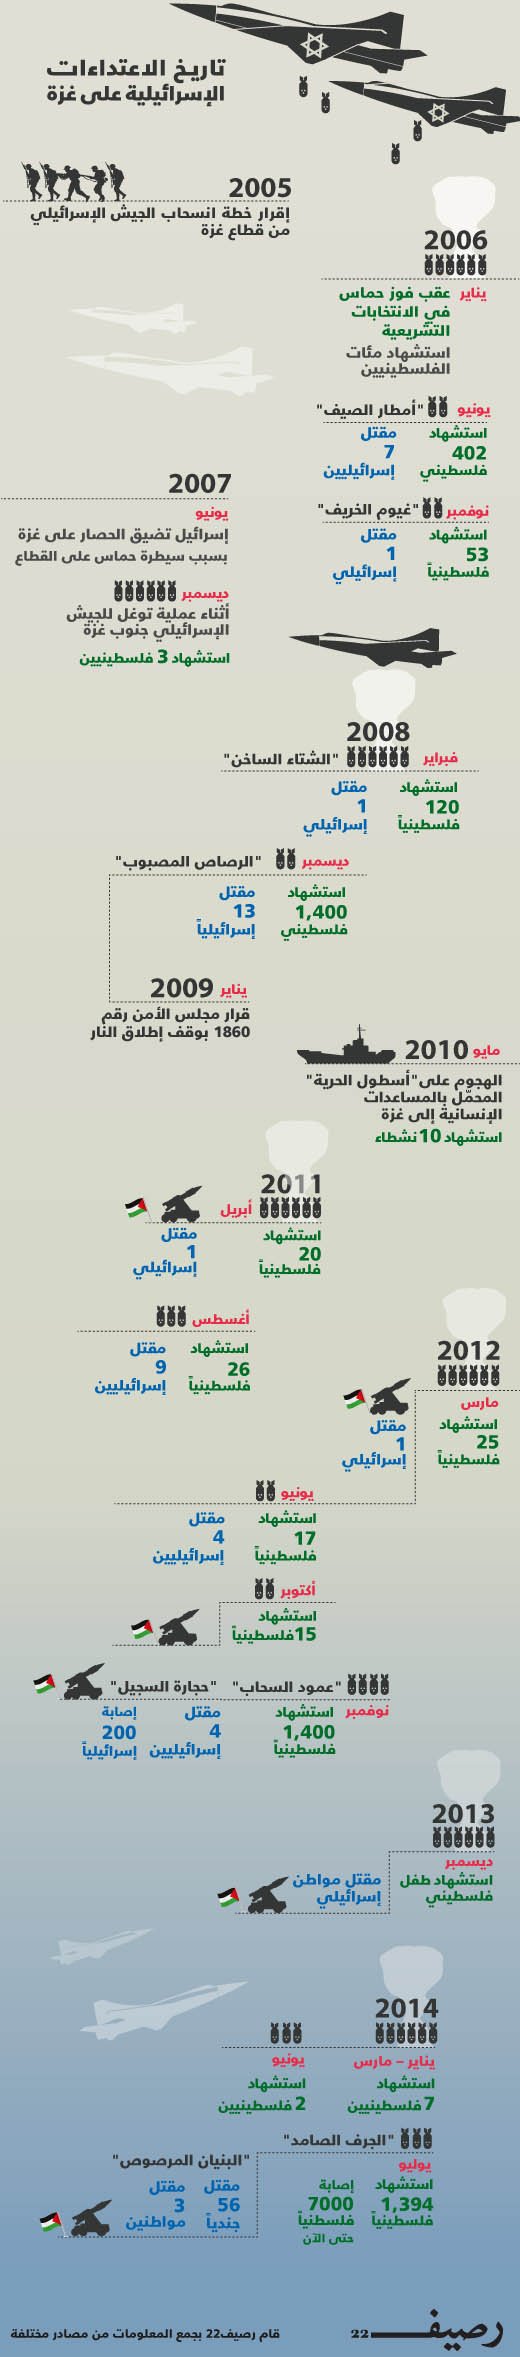 الاعتداءات على غزة - تاريخ الاعتداءات الإسرائيلية على غزة - إنفوجرافيك